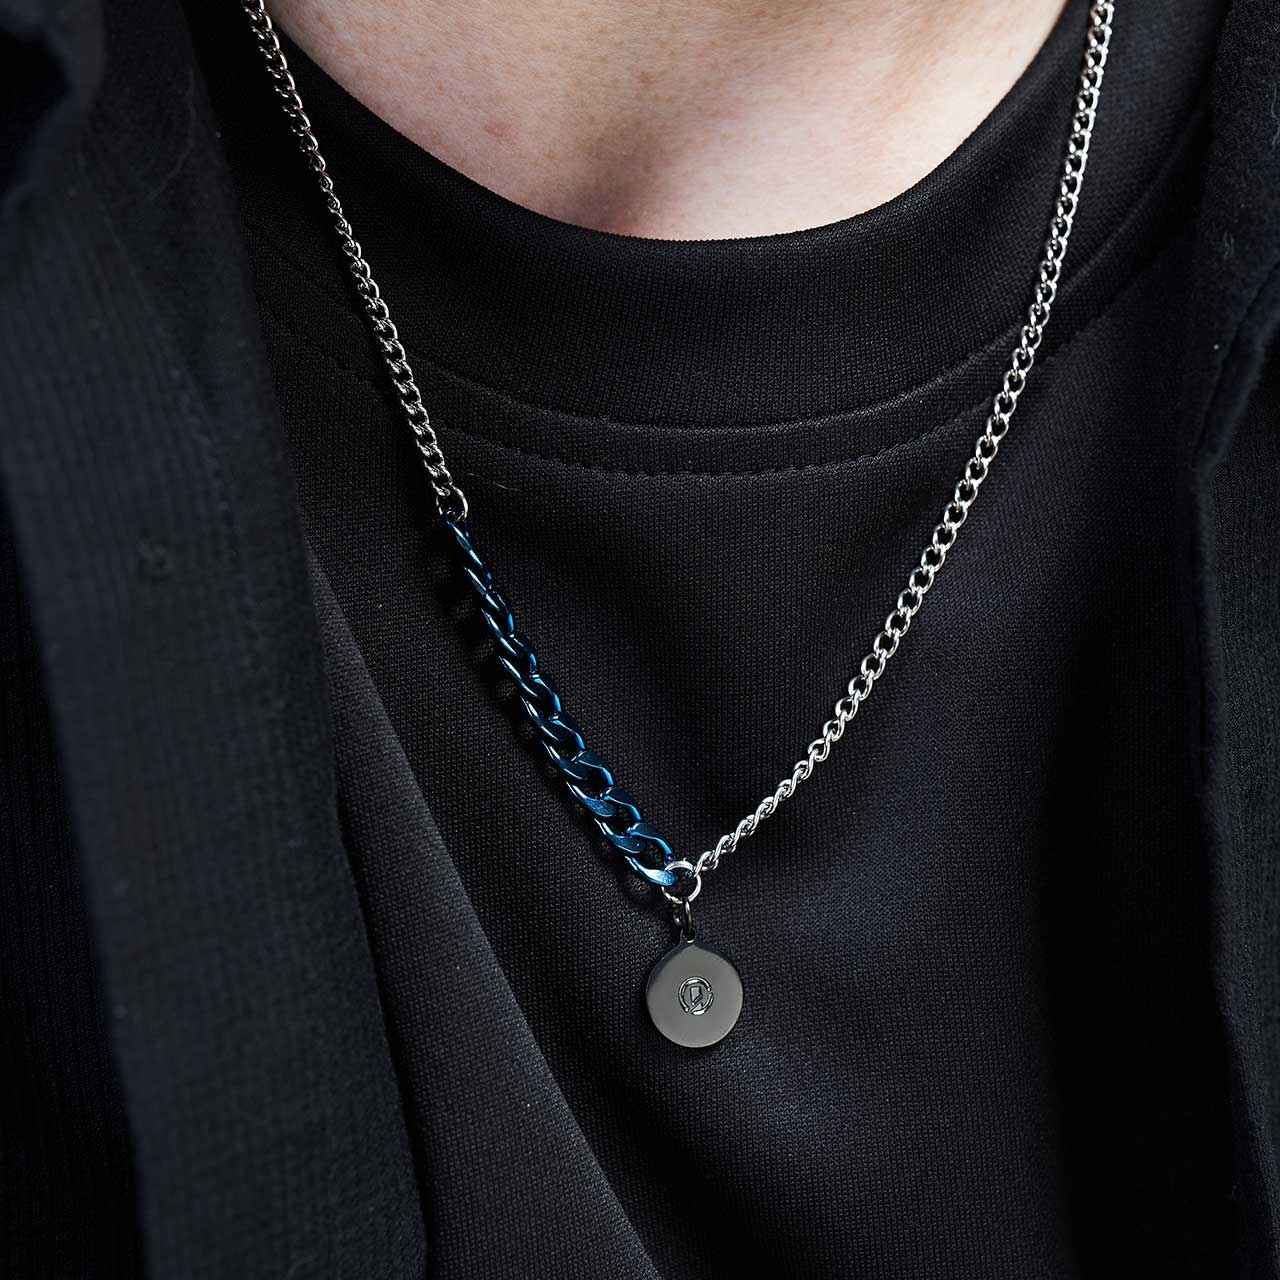 Miniature Tint Pendant Necklace - Blue